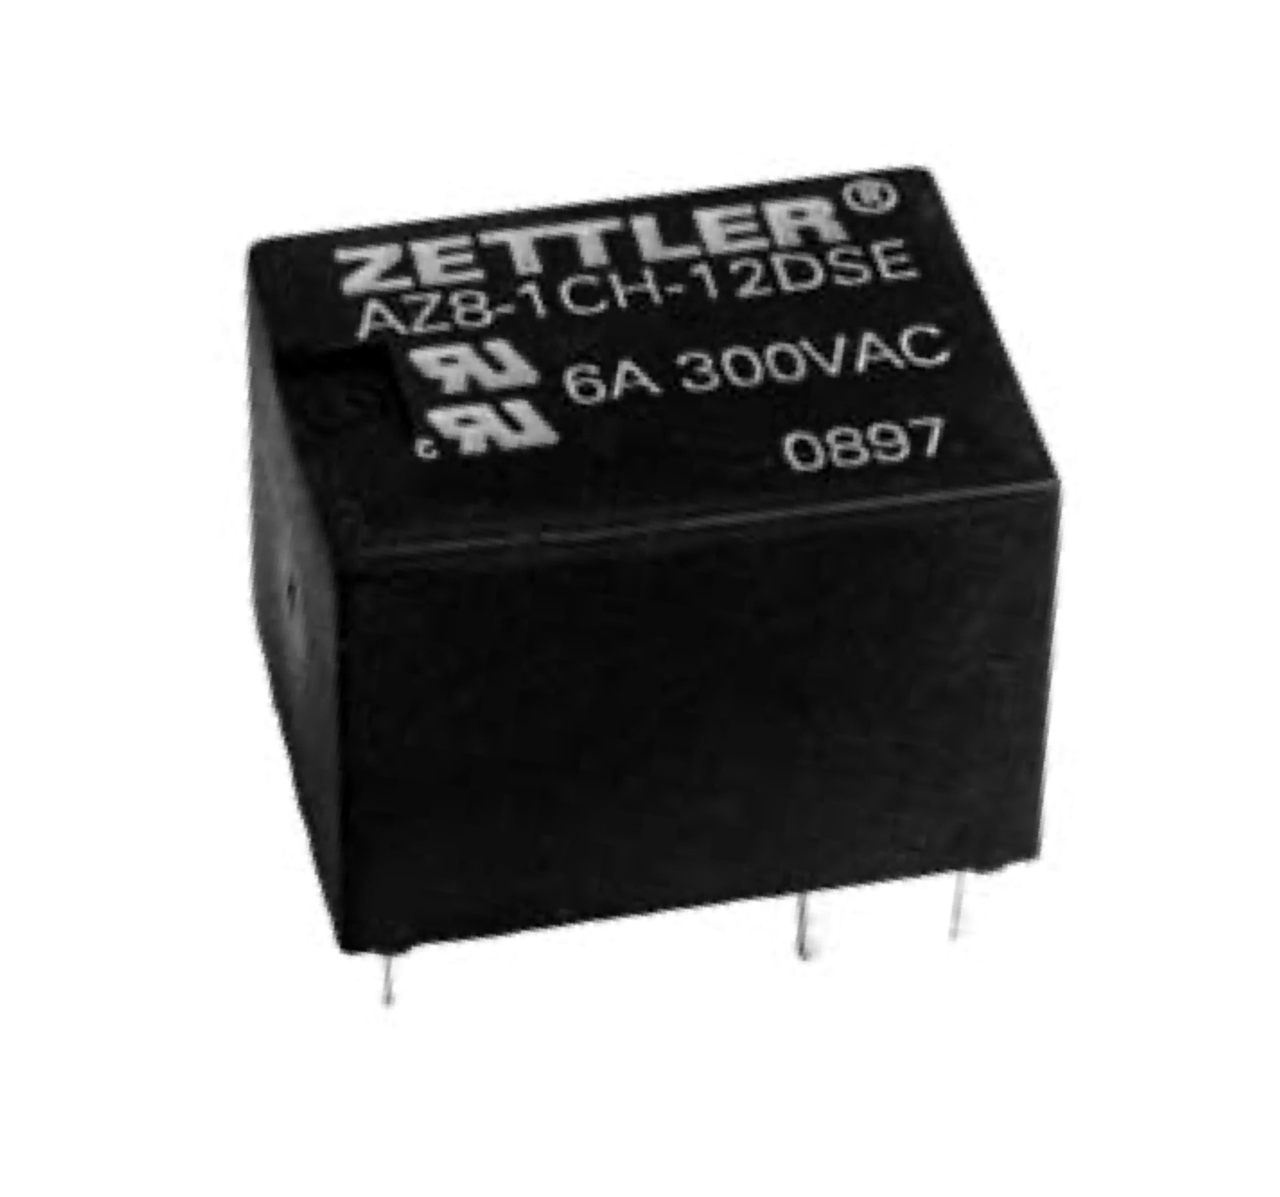 American Zettler AZ8-1CT-9D Power Relay